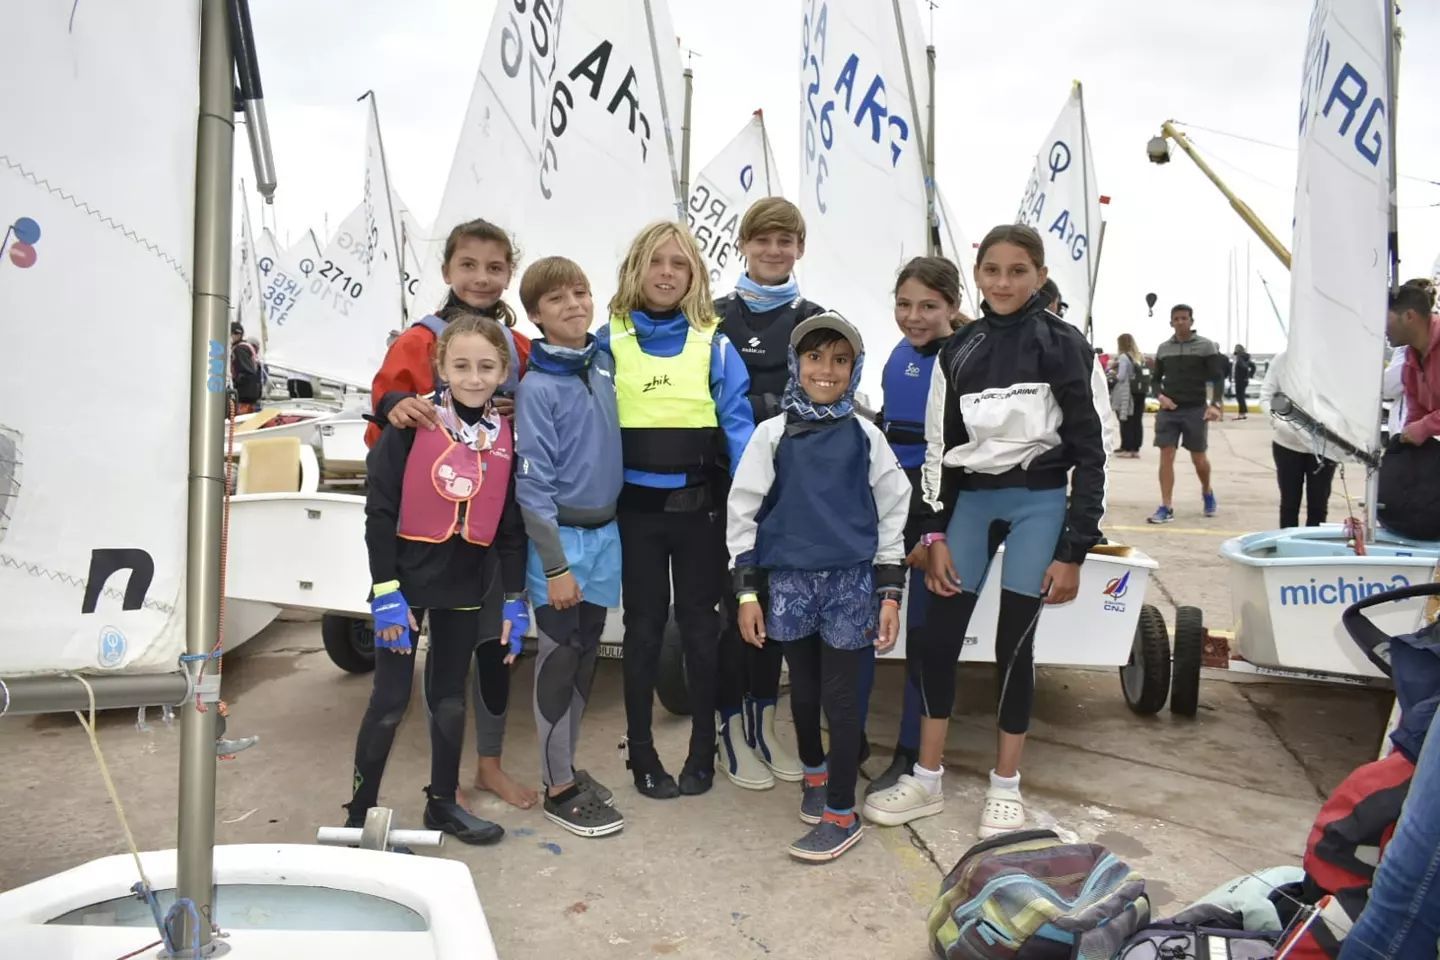 Los optimists de Náutico navegaron en la Semana Internacional en Mar del Plata